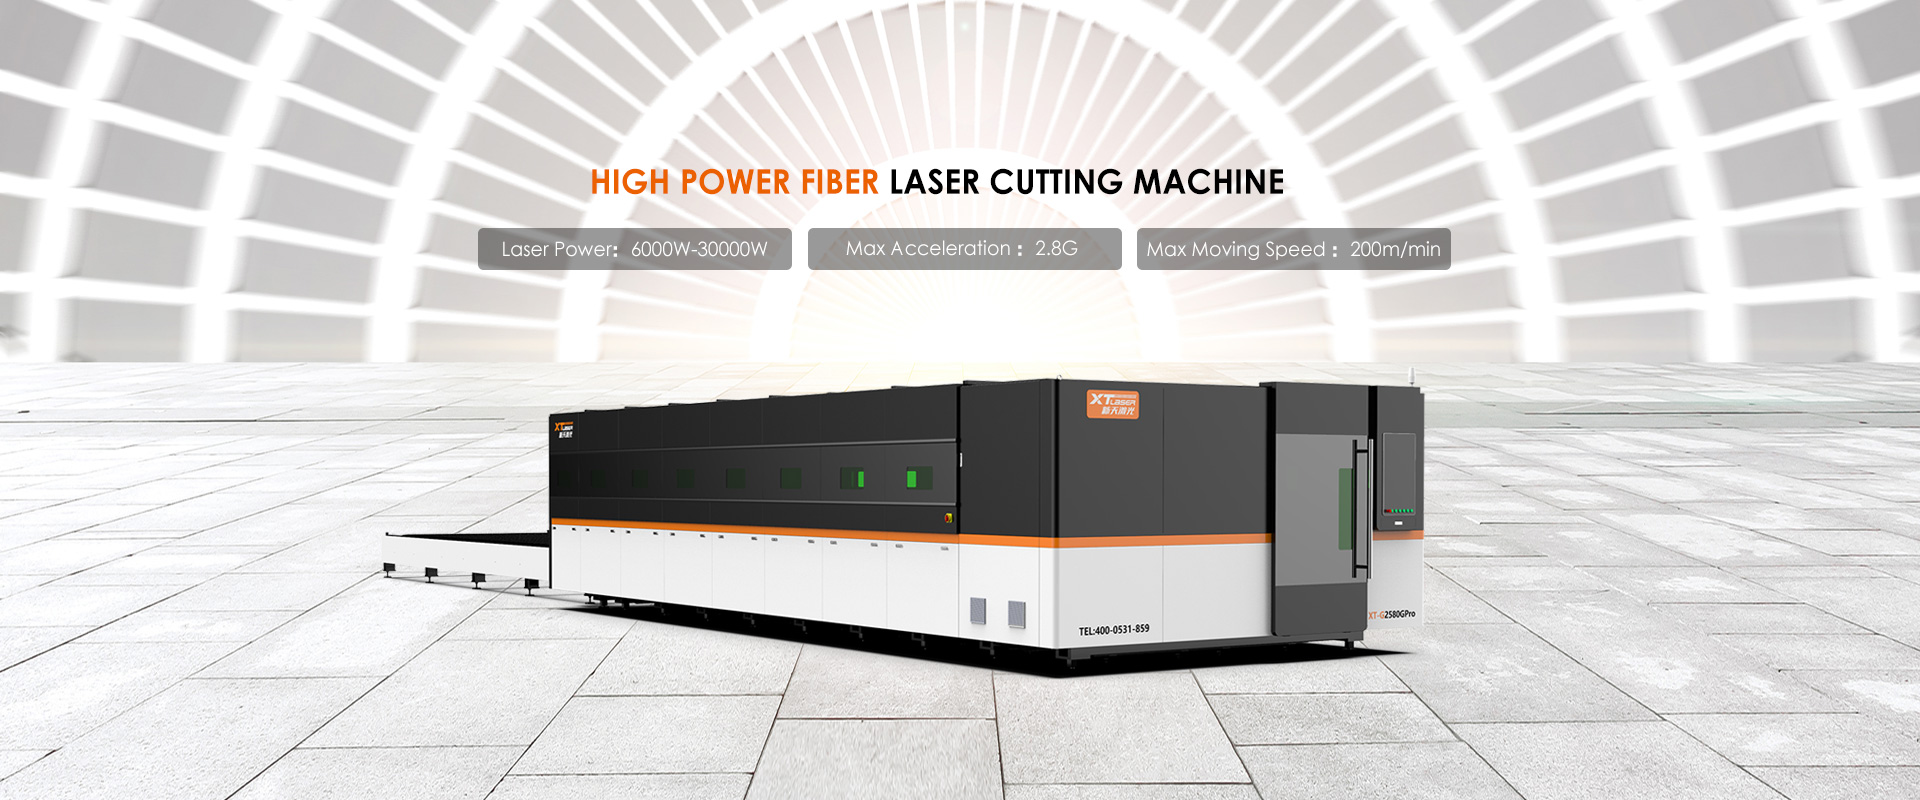 High Power Fiber Laser Cutting Machine Factory